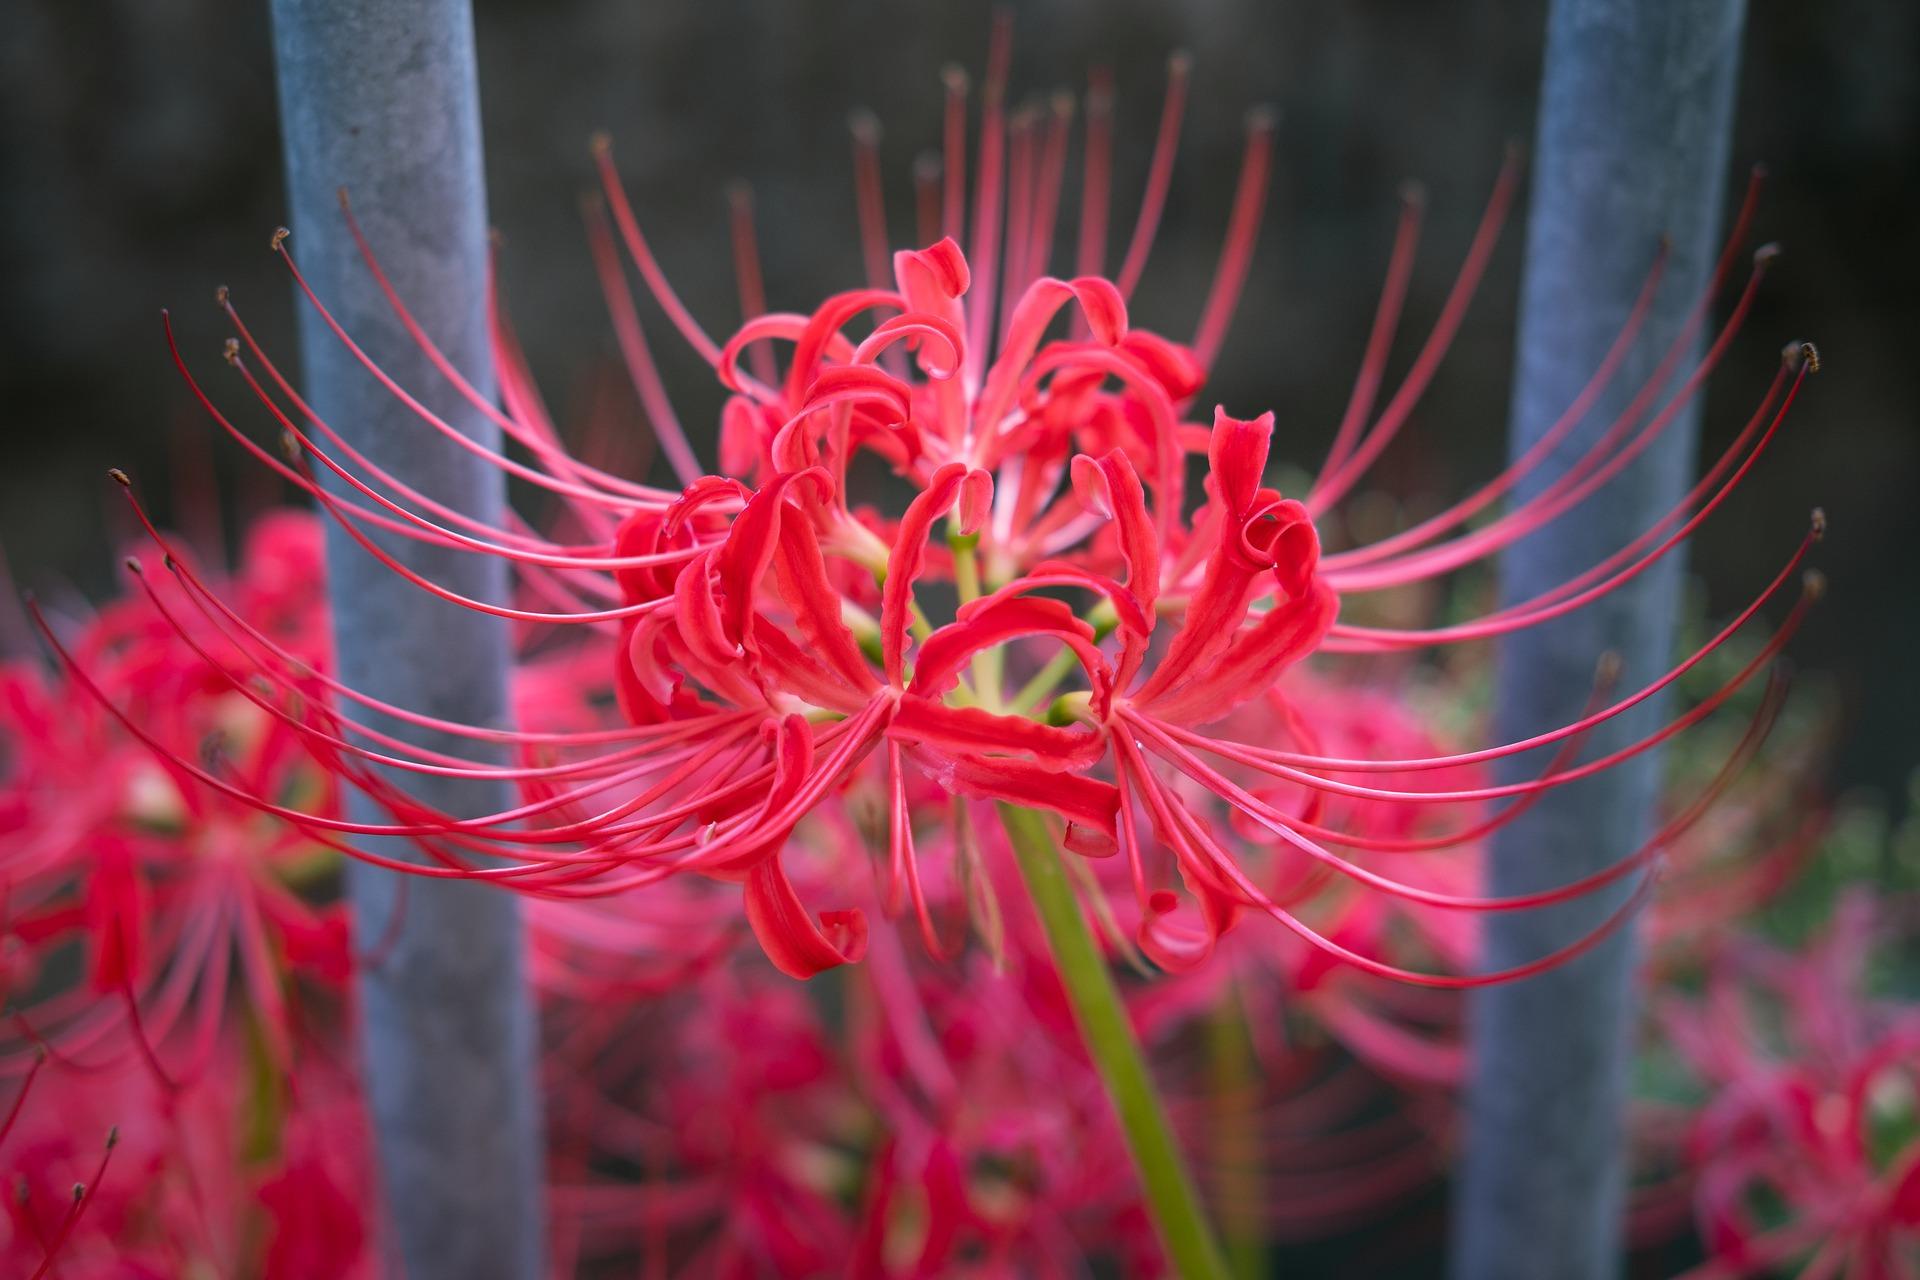 Lycoris 'Radiata' - Magic Lily (Shipping begins Fall 2022) from Leo Berbee Bulb Company